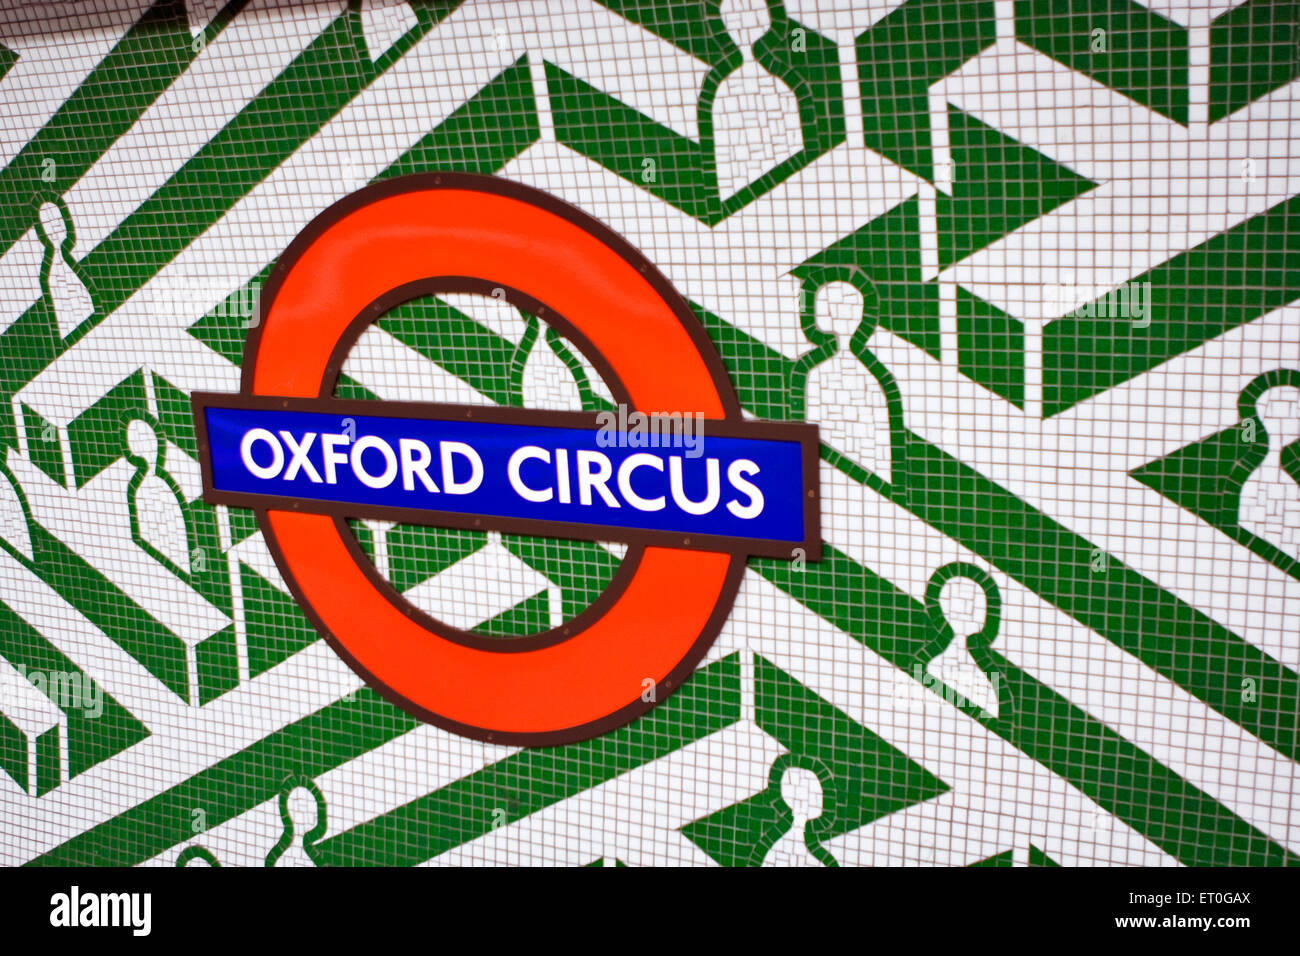 Image réalisée sur le mur à l'aide de panneaux de la station de métro Oxford Circus ; ; ; London UK Royaume-Uni Angleterre Banque D'Images